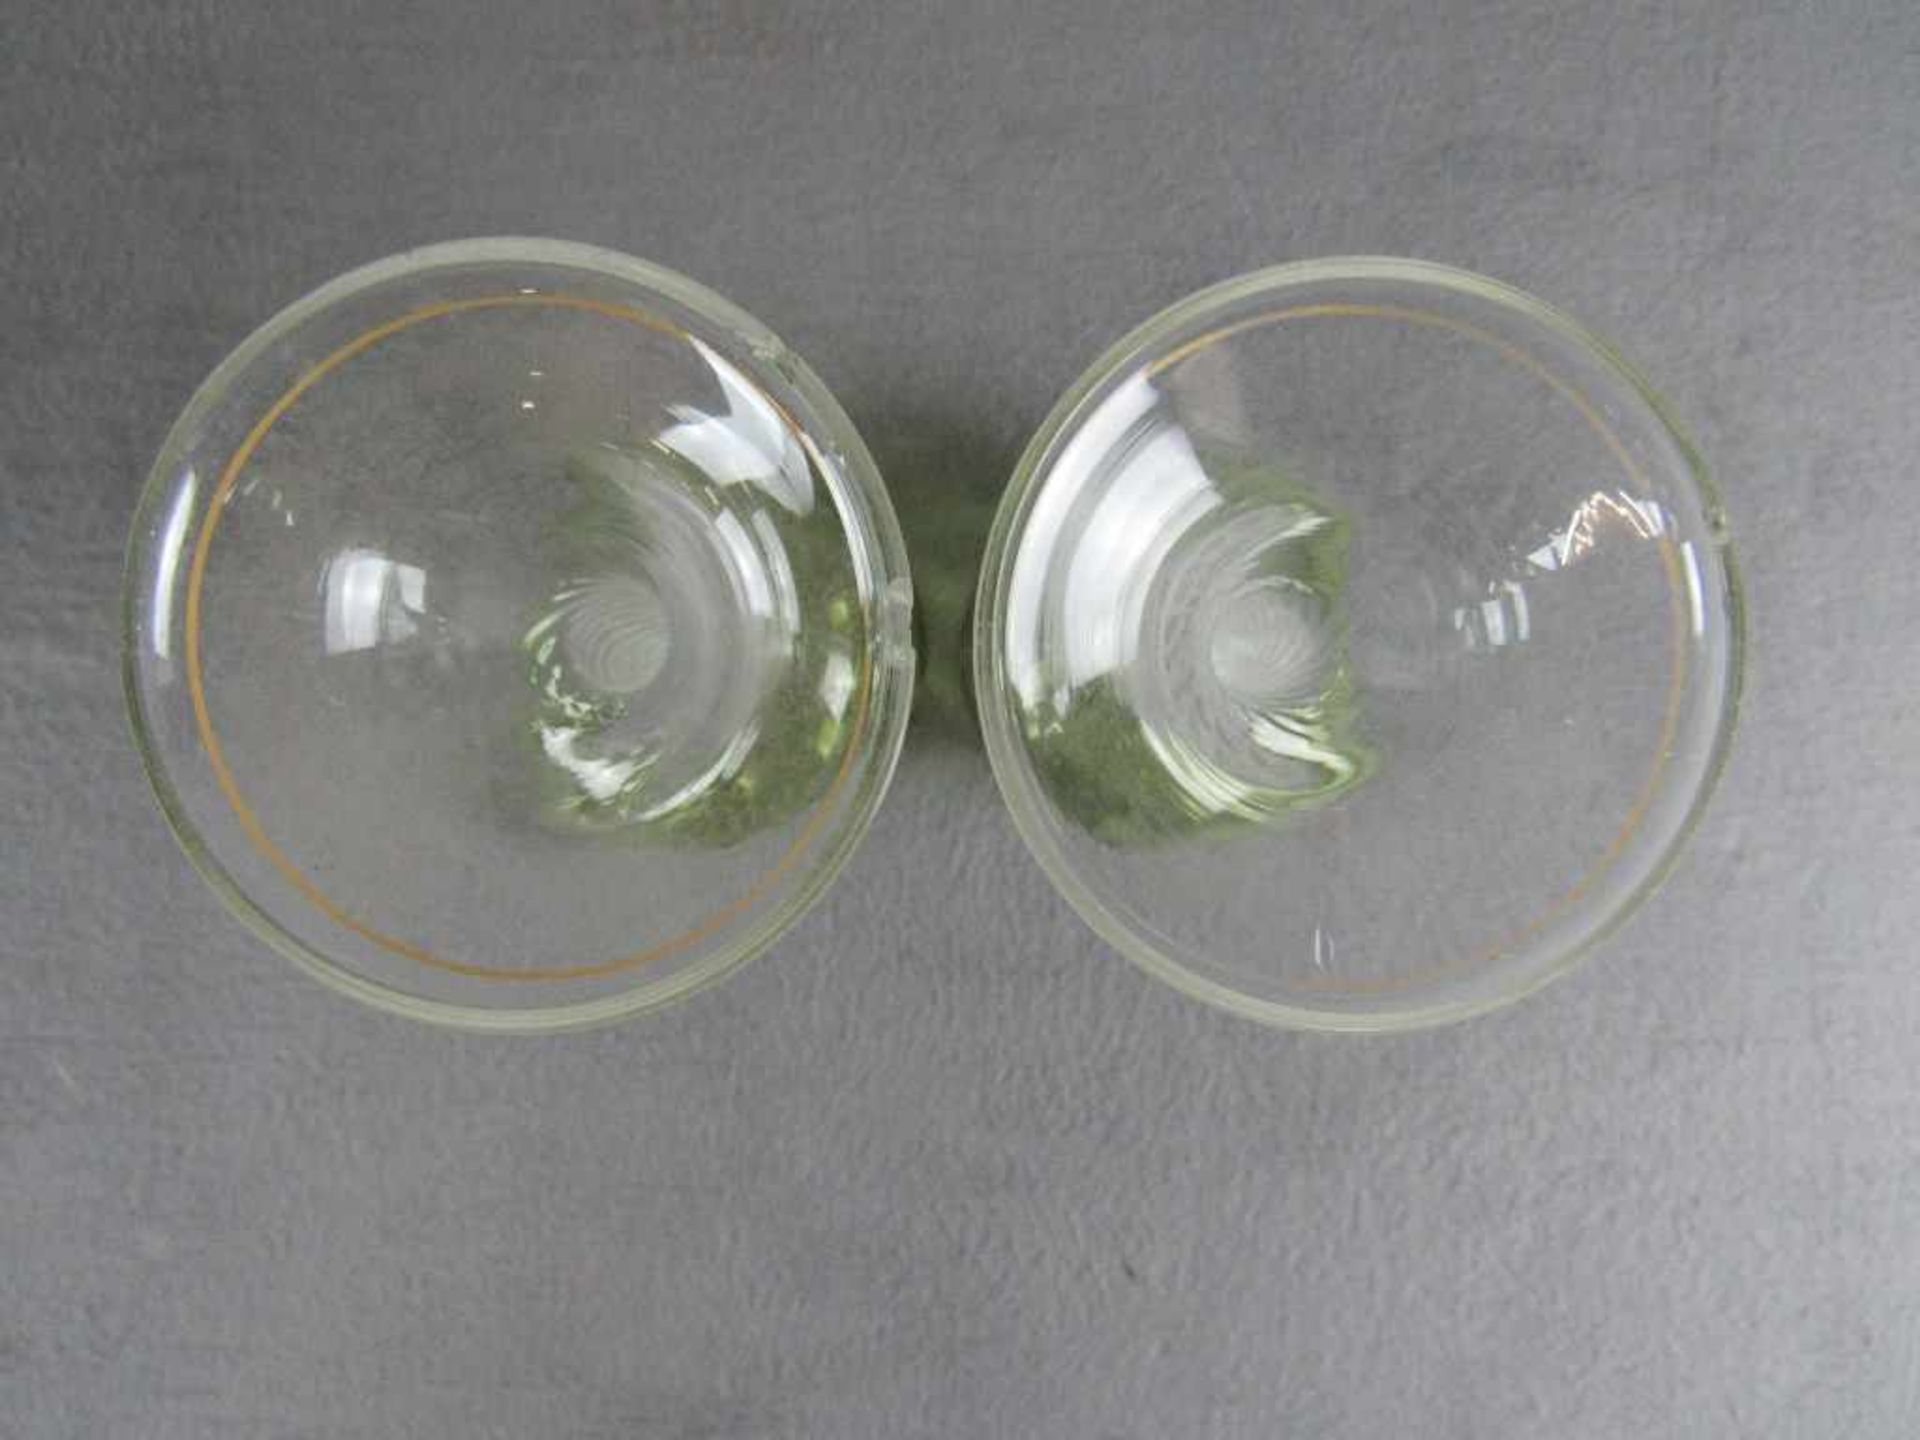 Zwei antike Grünglasgläser gedrehter Stiel mundgeblasen 18,5cm hoch- - -20.00 % buyer's premium on - Bild 3 aus 3